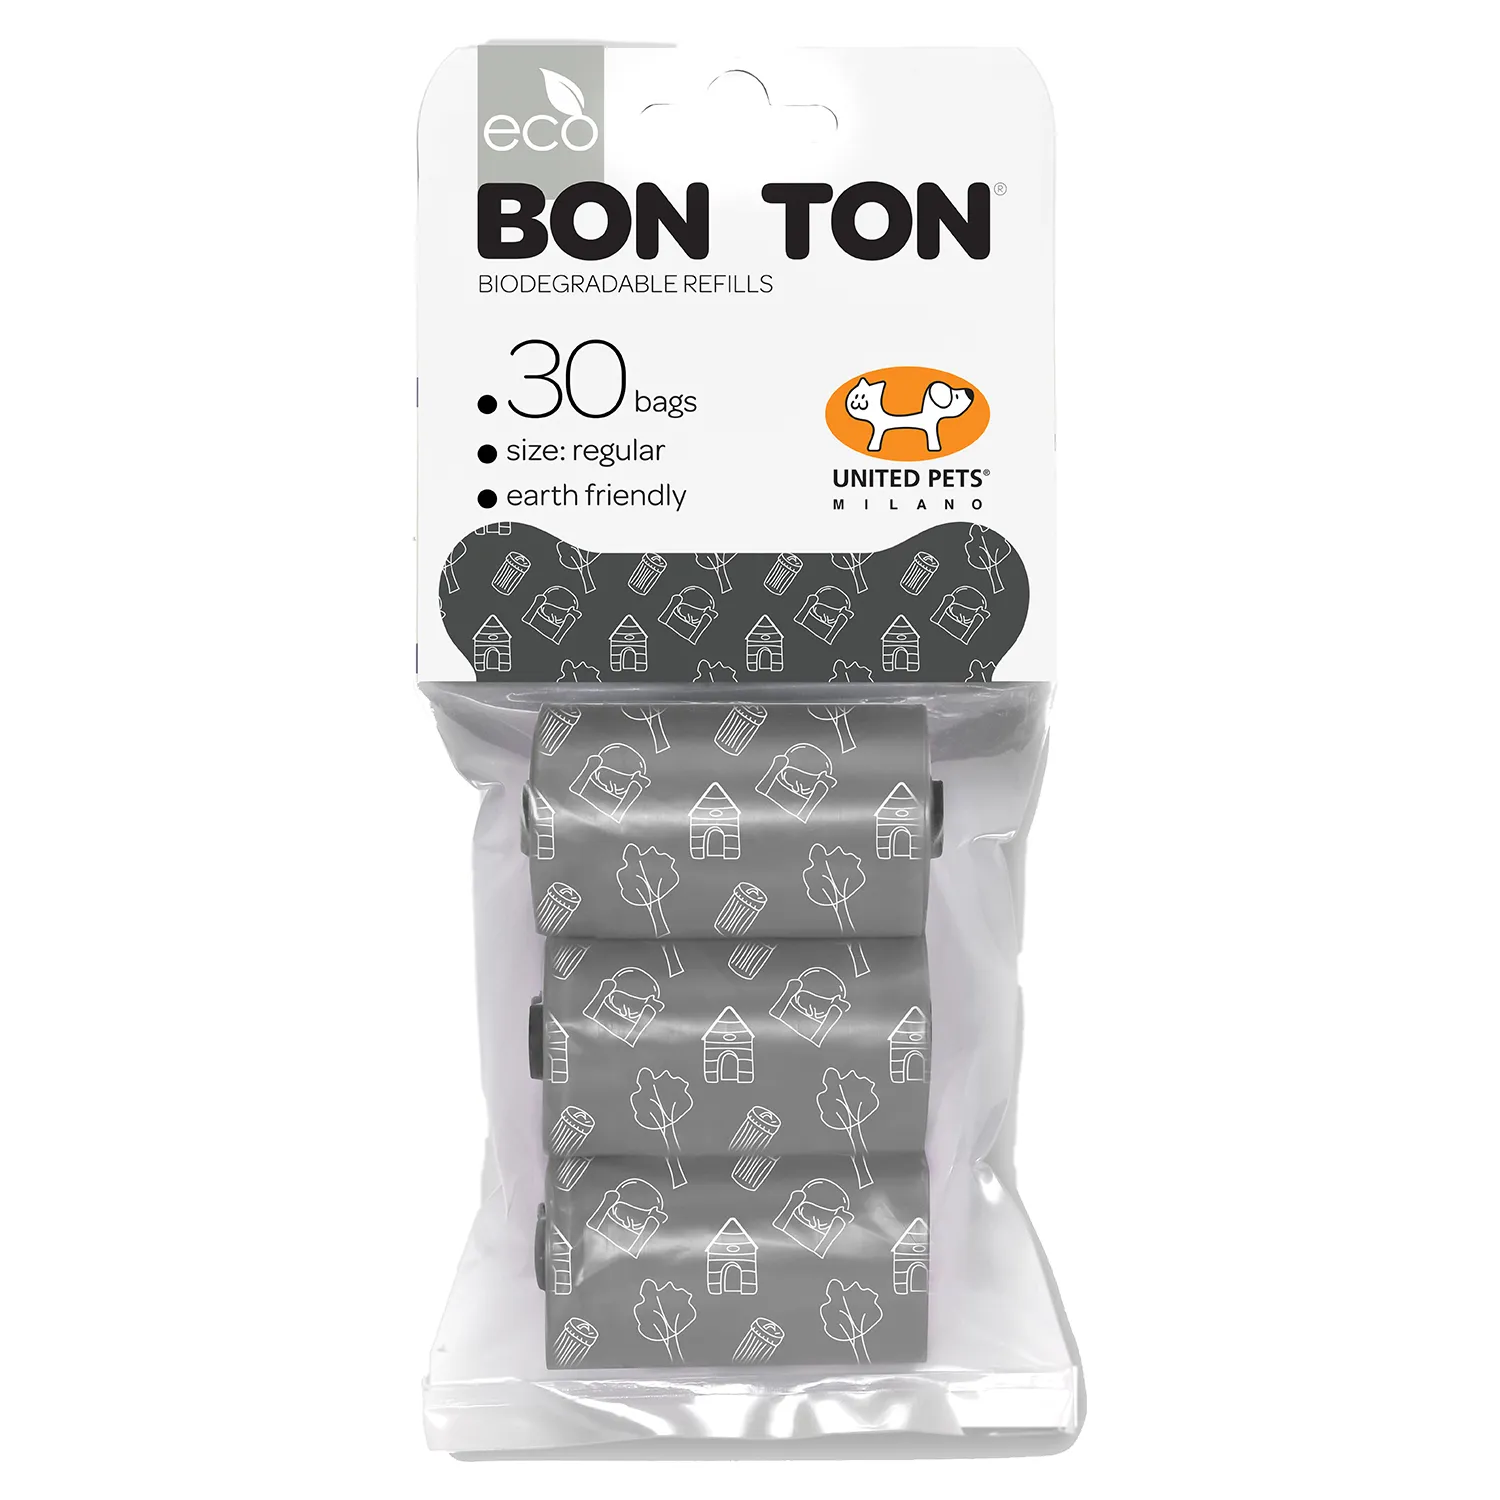 United Pets пакеты "Refill" для набора "BON TON" 3 рулона по 10 пакетов, черные